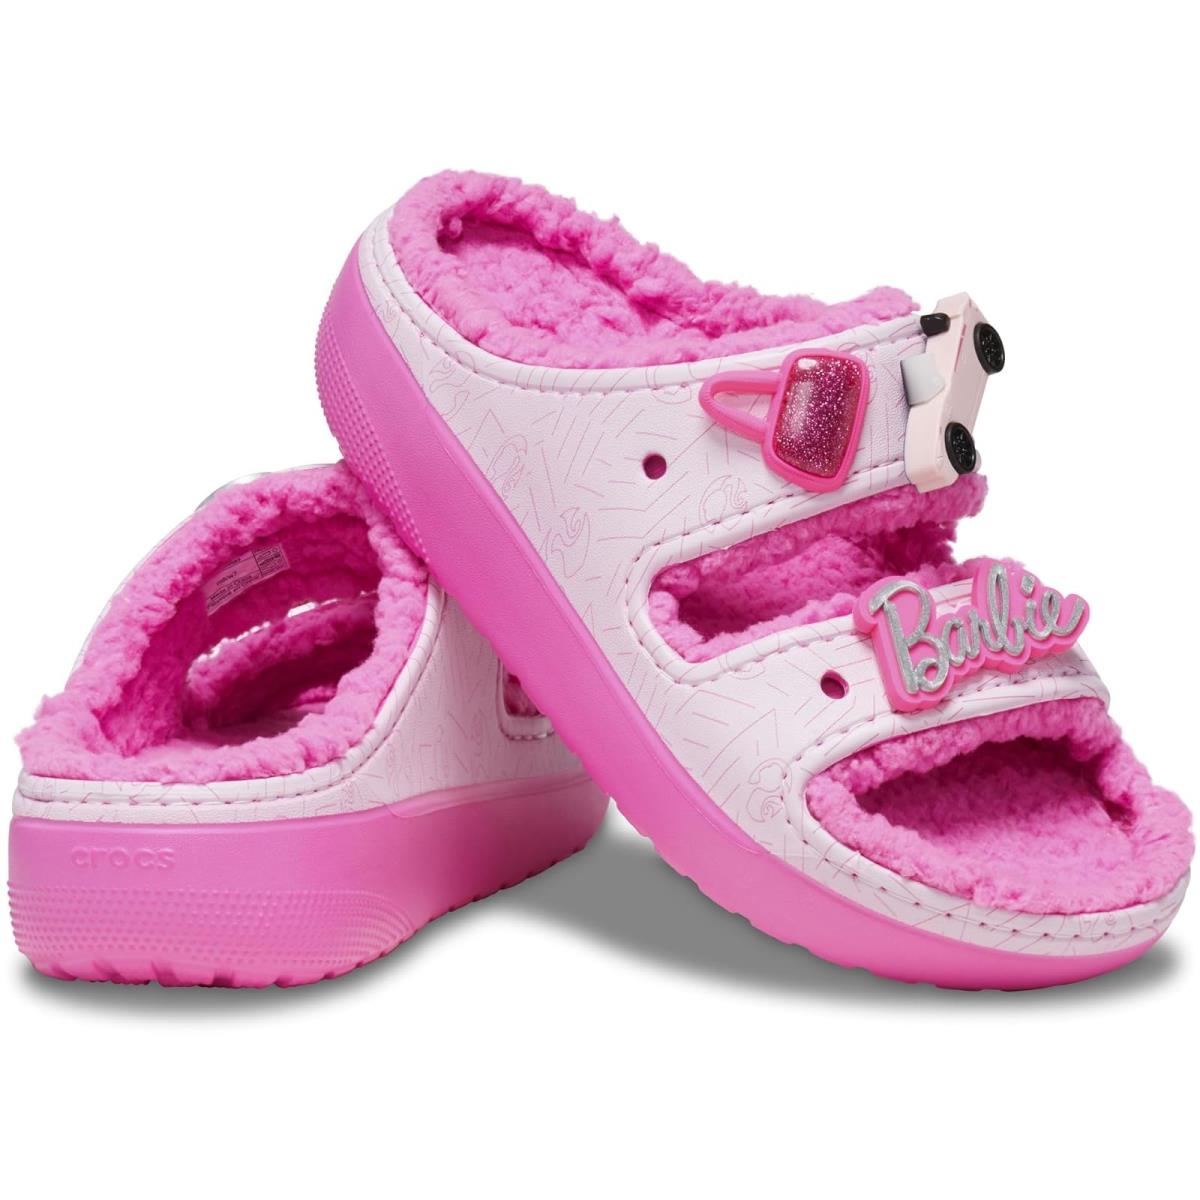 Unisex Sandals Crocs Barbie Cozzzy Sandal Electric Pink